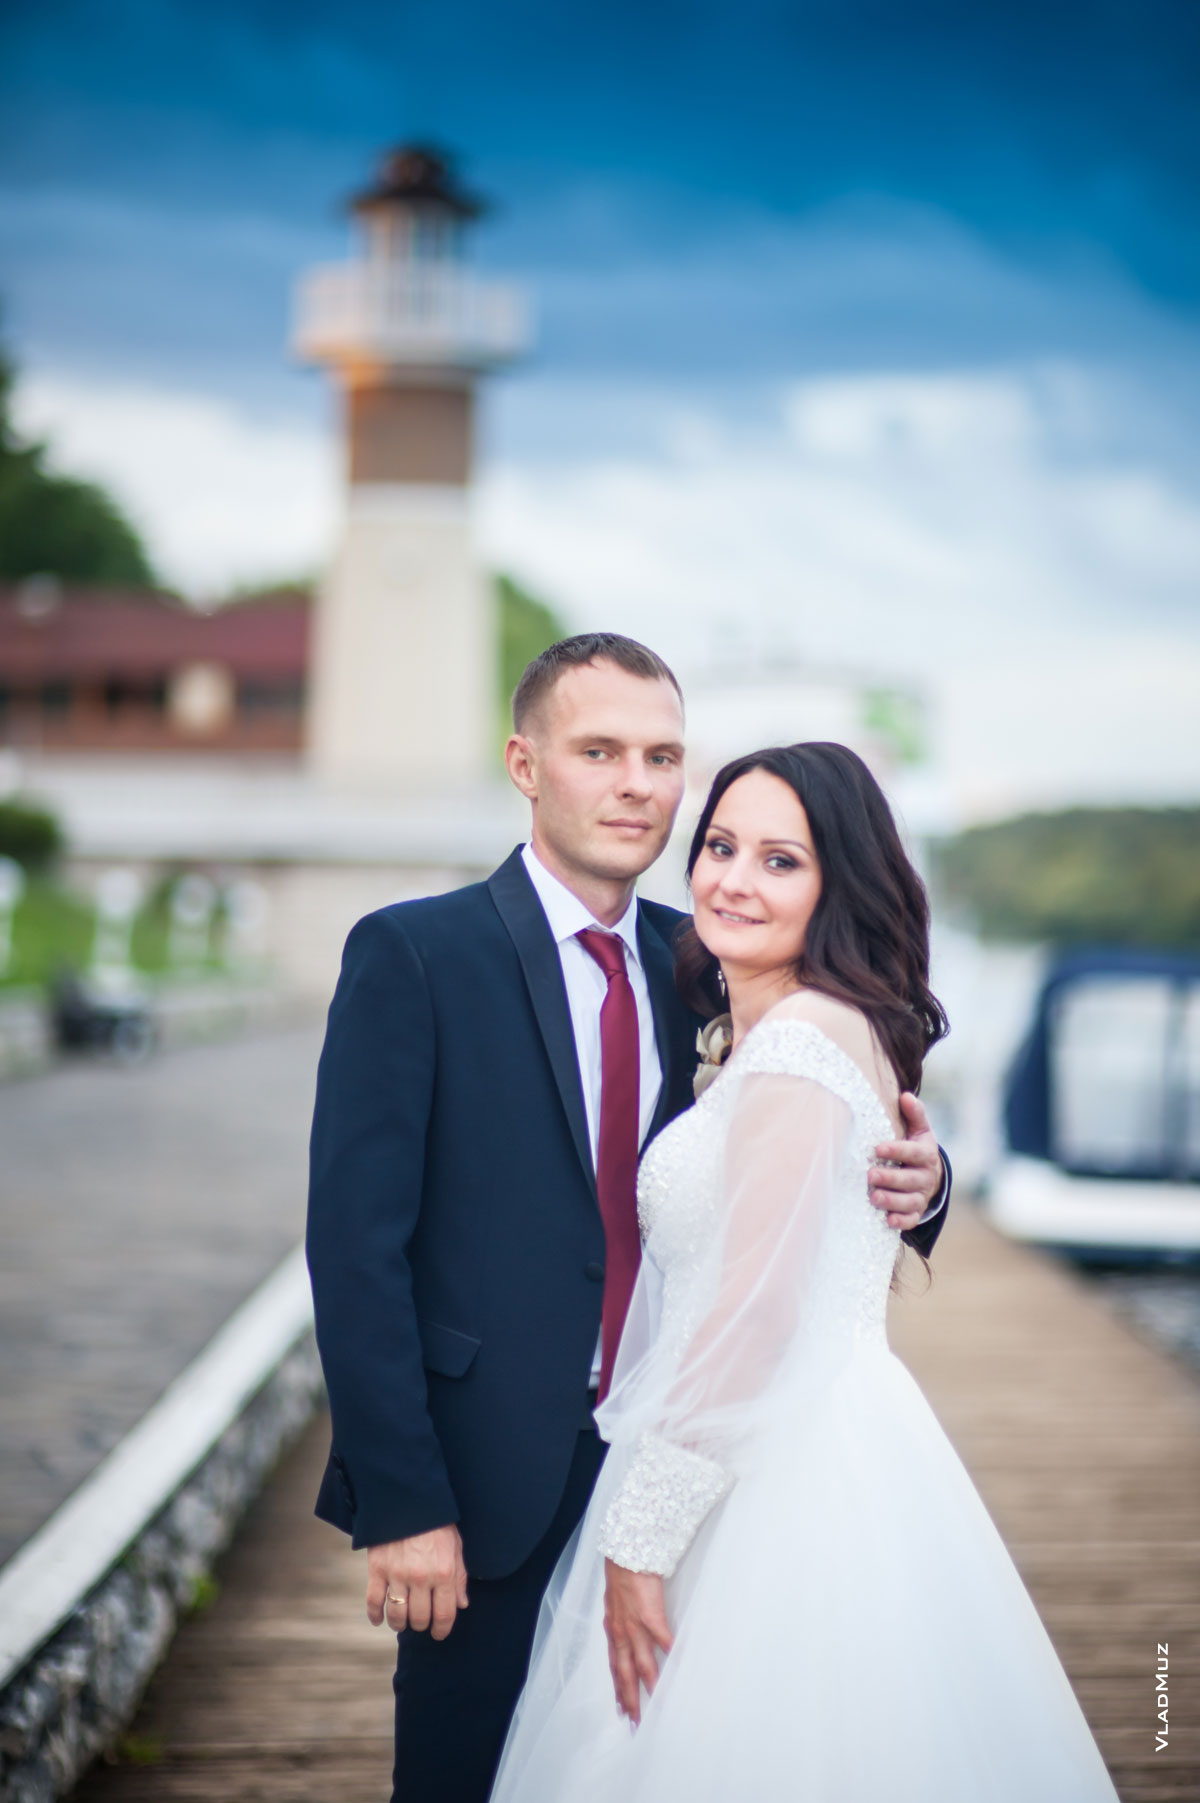 Фото жениха и невесты на фоне маяка и синего неба